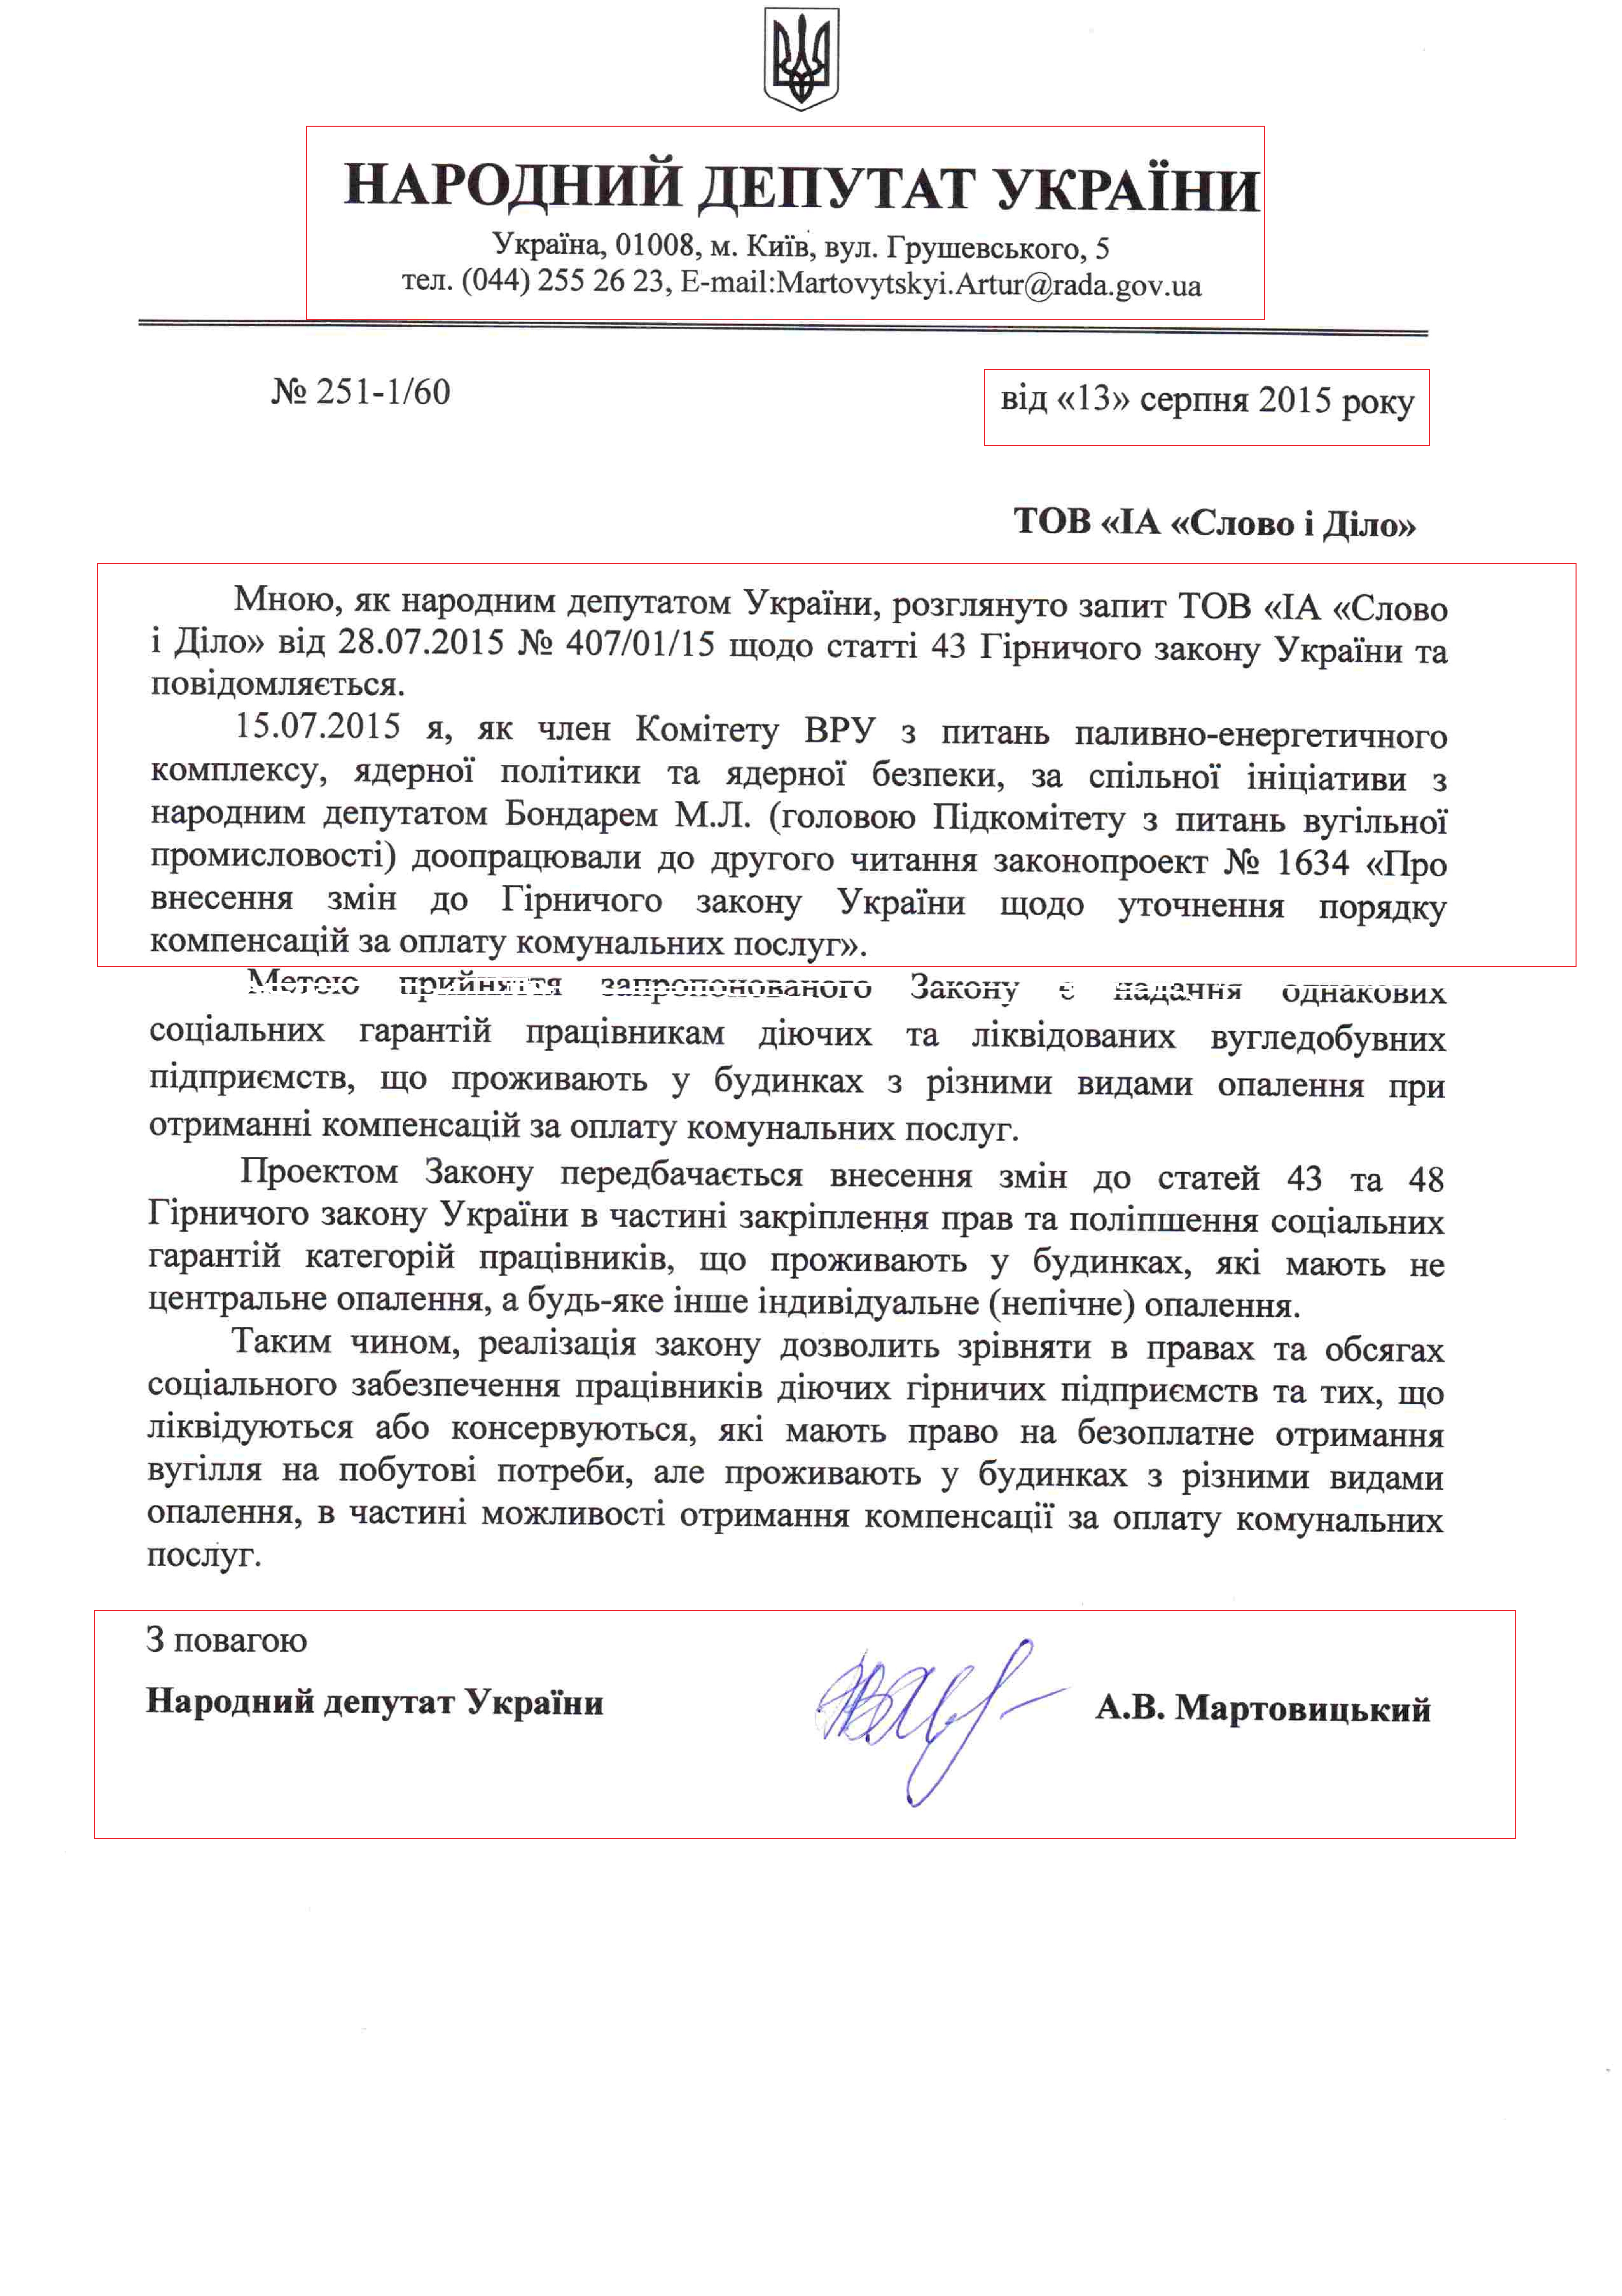 Відповідь народного депутата України Артура Мартовицького на запит для доступу до публічної інформації